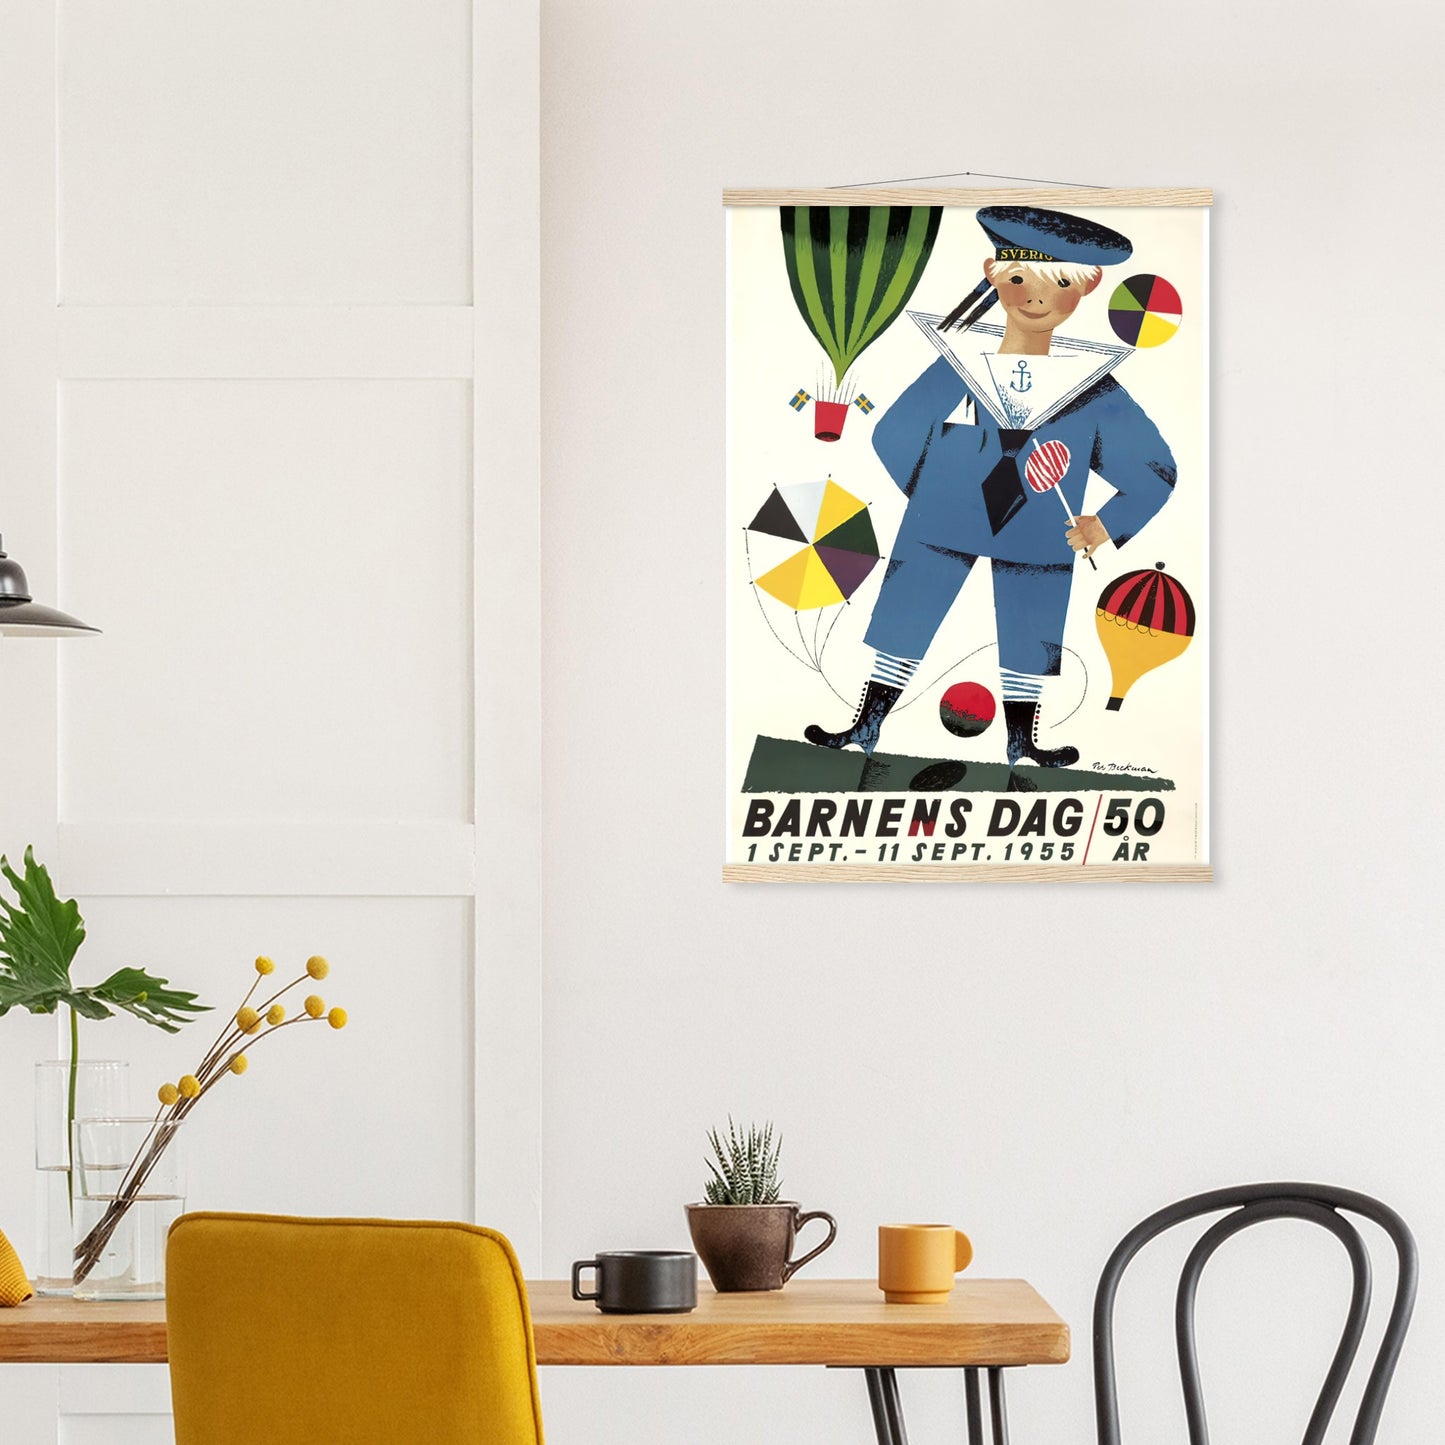 Barnens dag Vintage Poster Reprint on Premium Matte Paper - Posterify